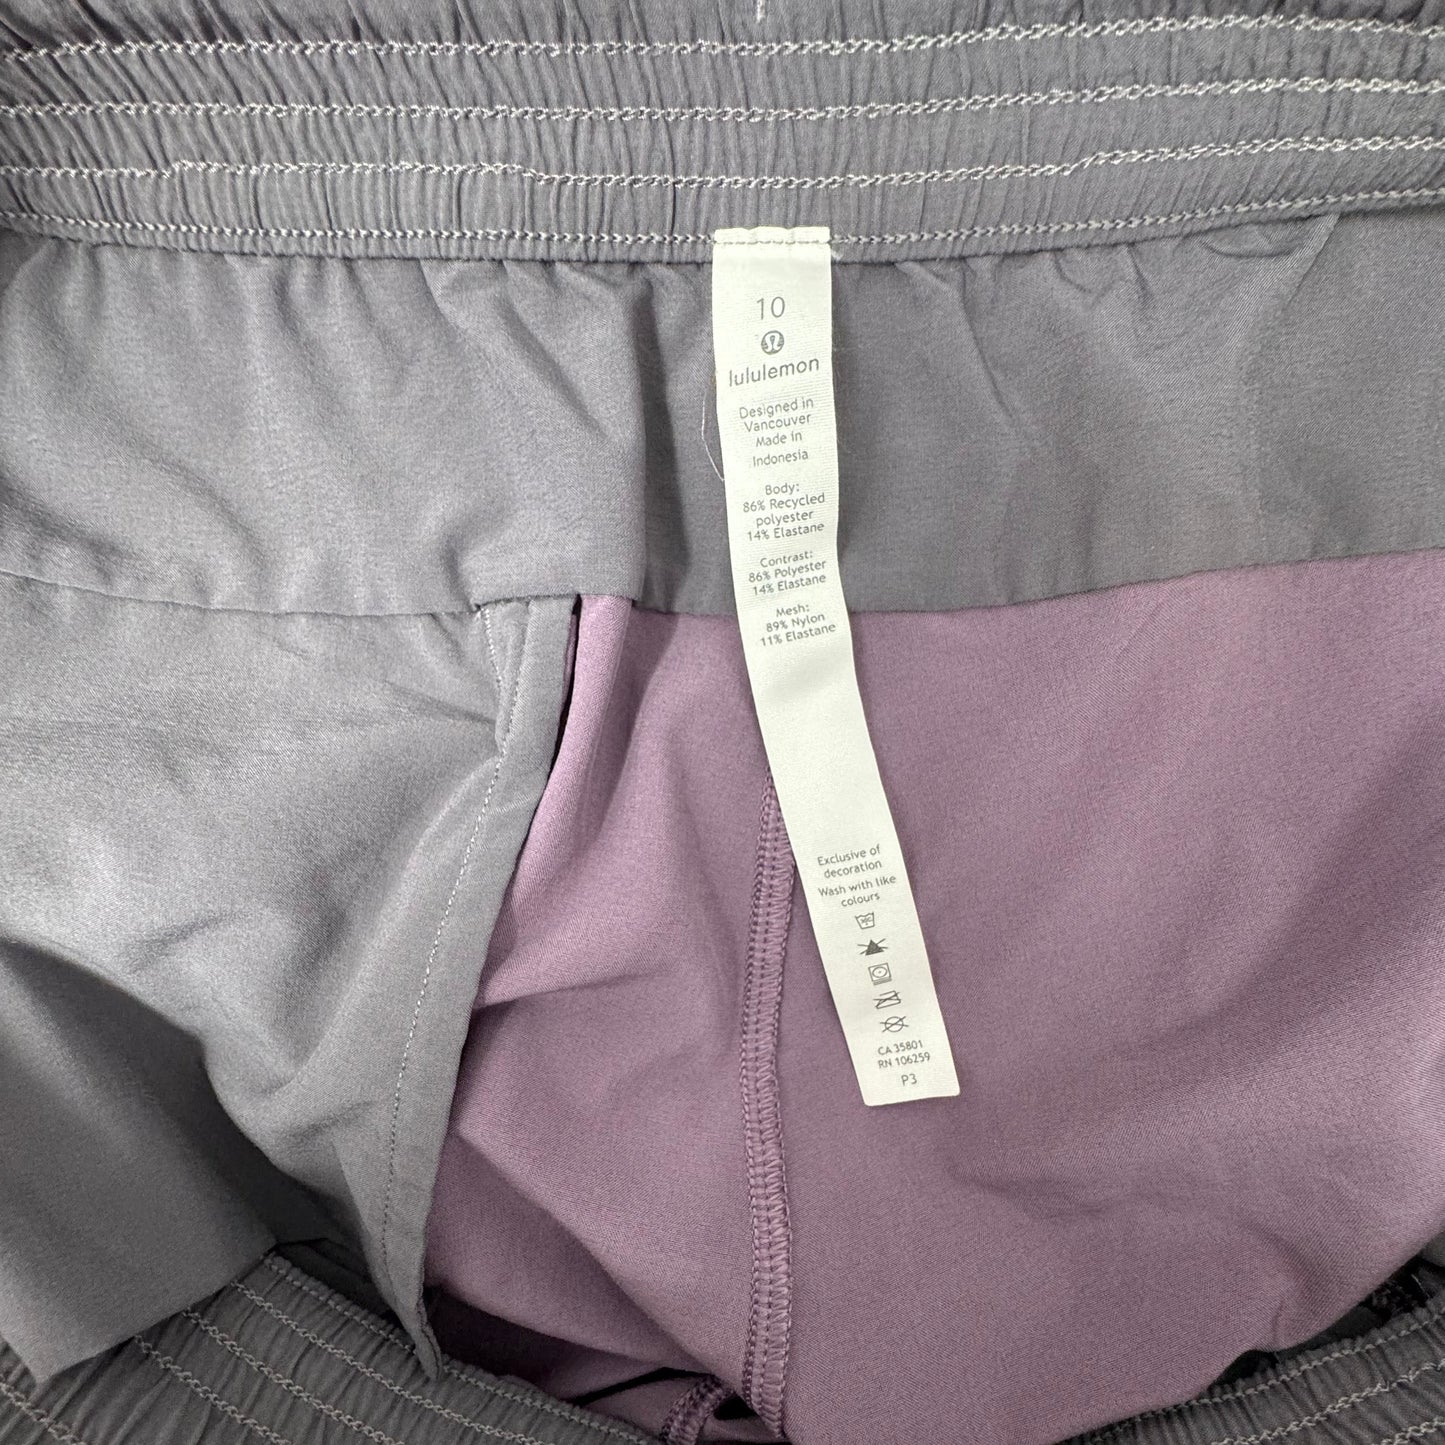 Purple Shorts Lululemon, Size 10